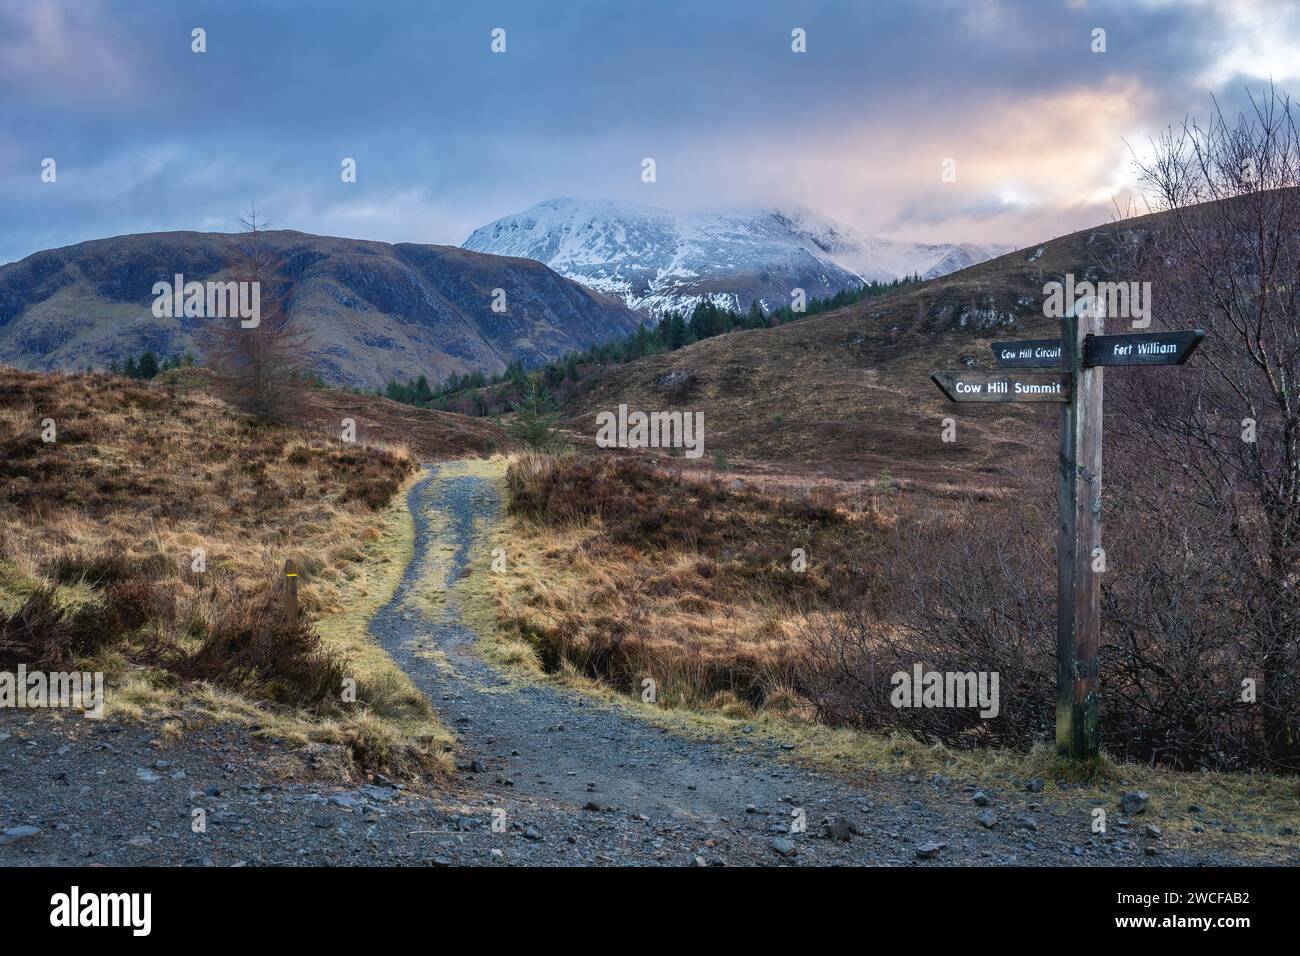 Chemin de randonnée avec indications dans les Highlands écossais, fort William Écosse. Banque D'Images